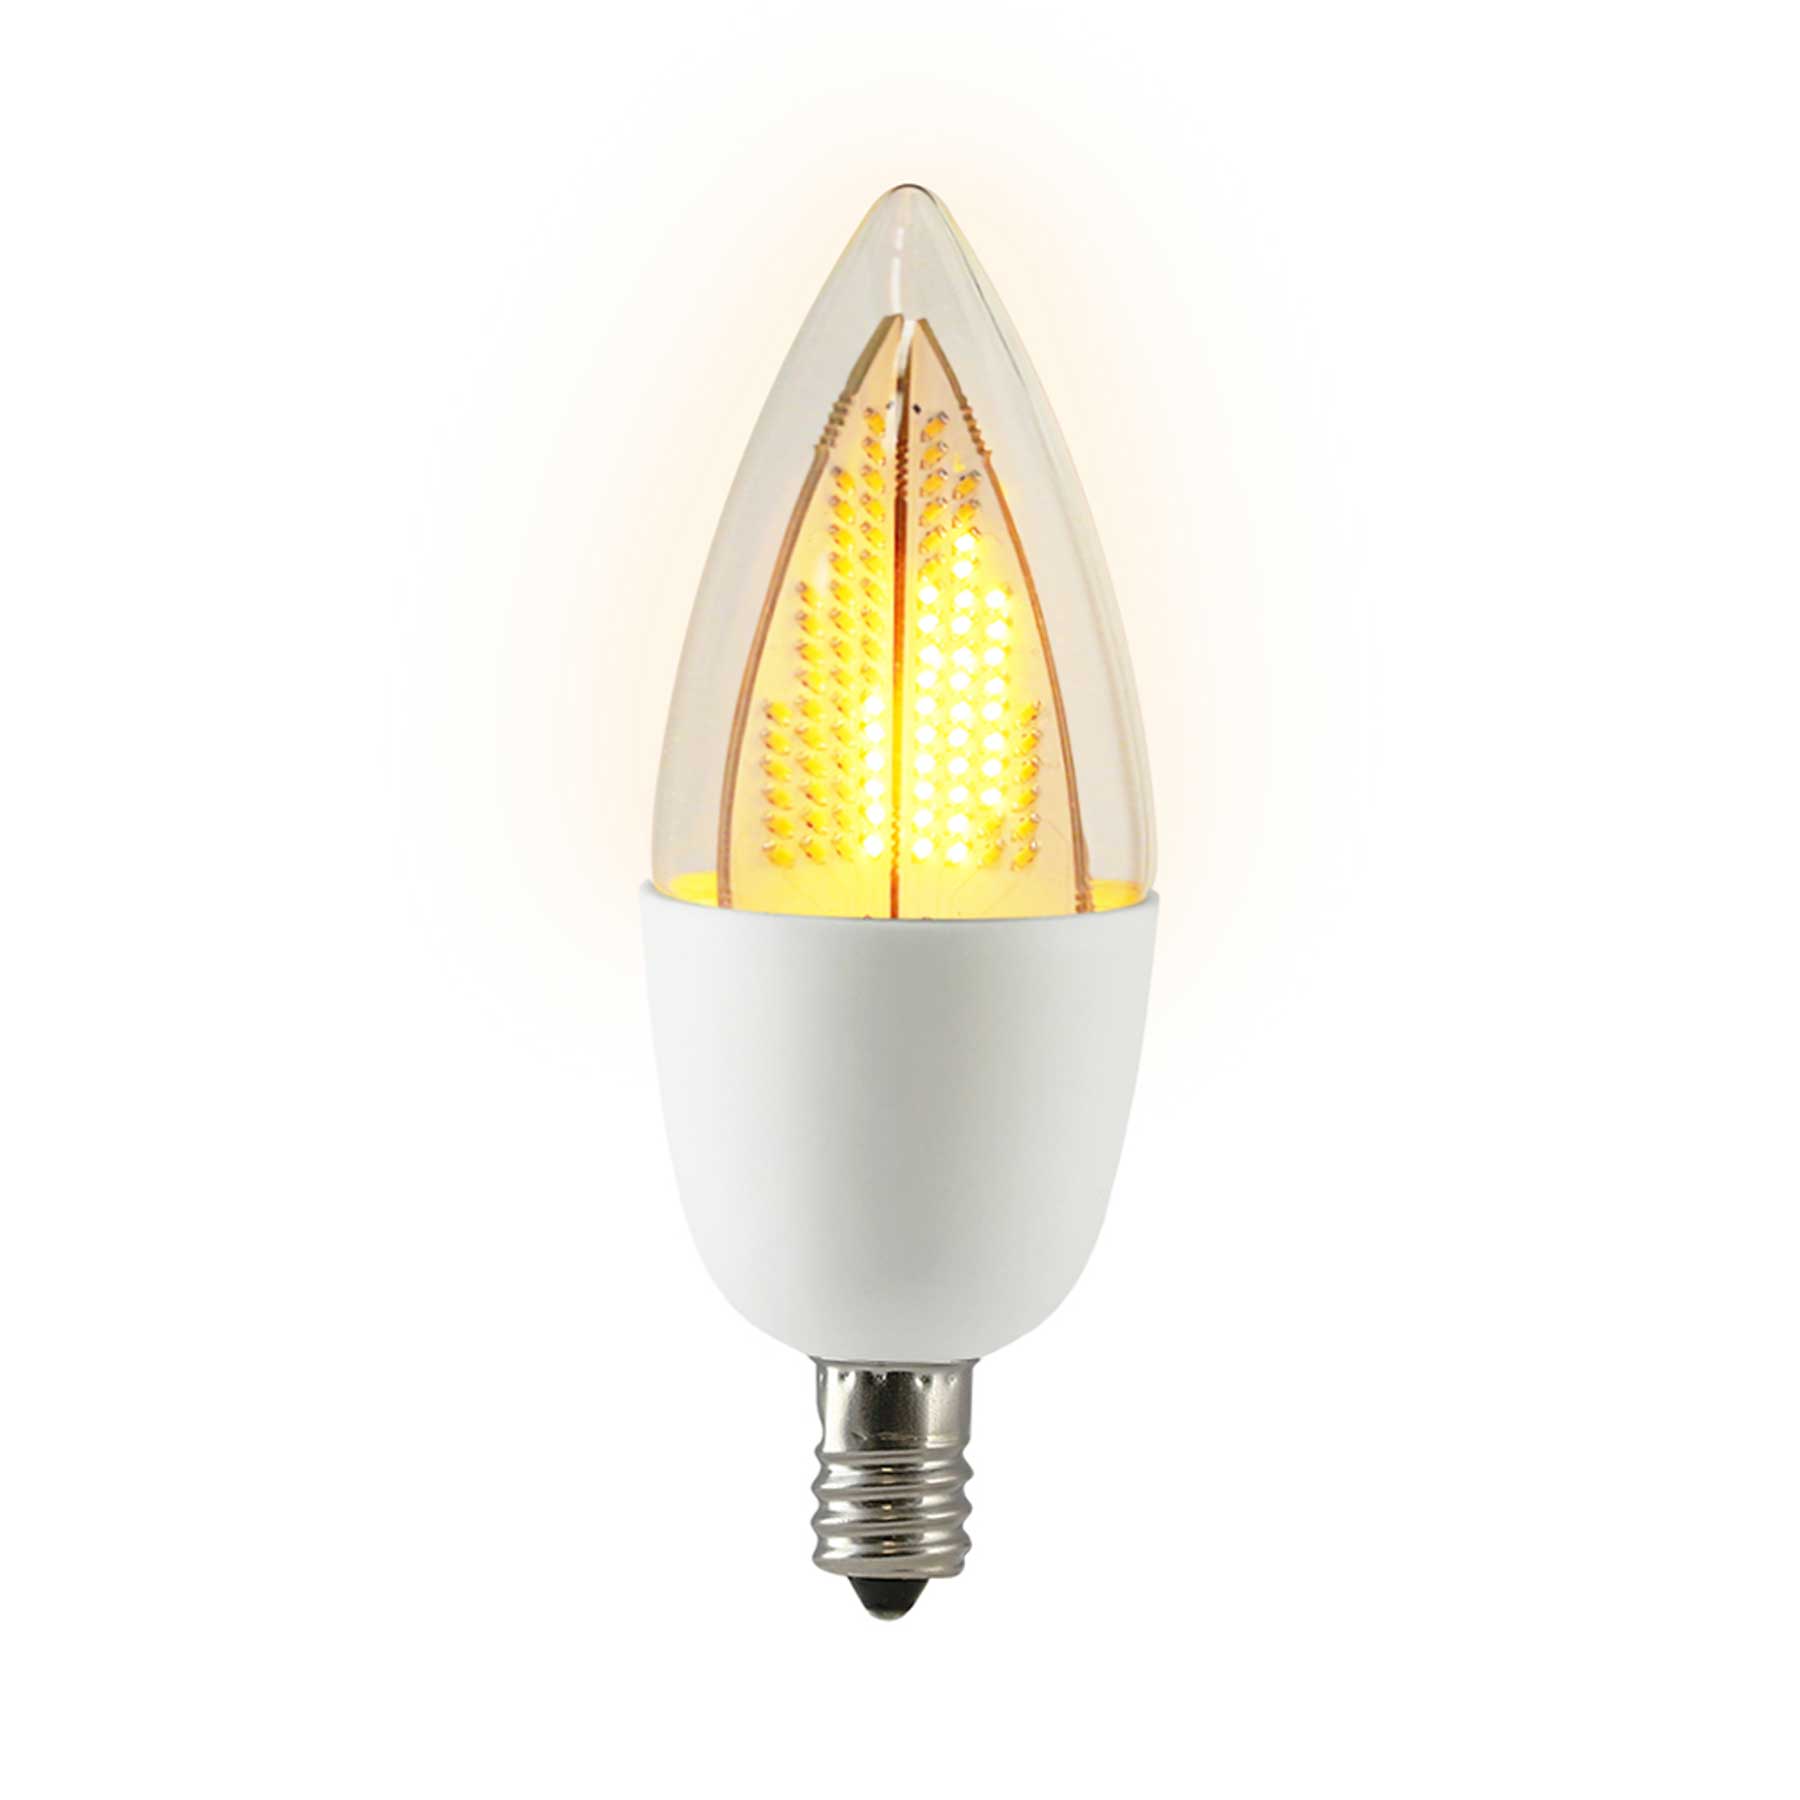 Candelabra Flame 1800K Flicker LED Light Bulb, White Base